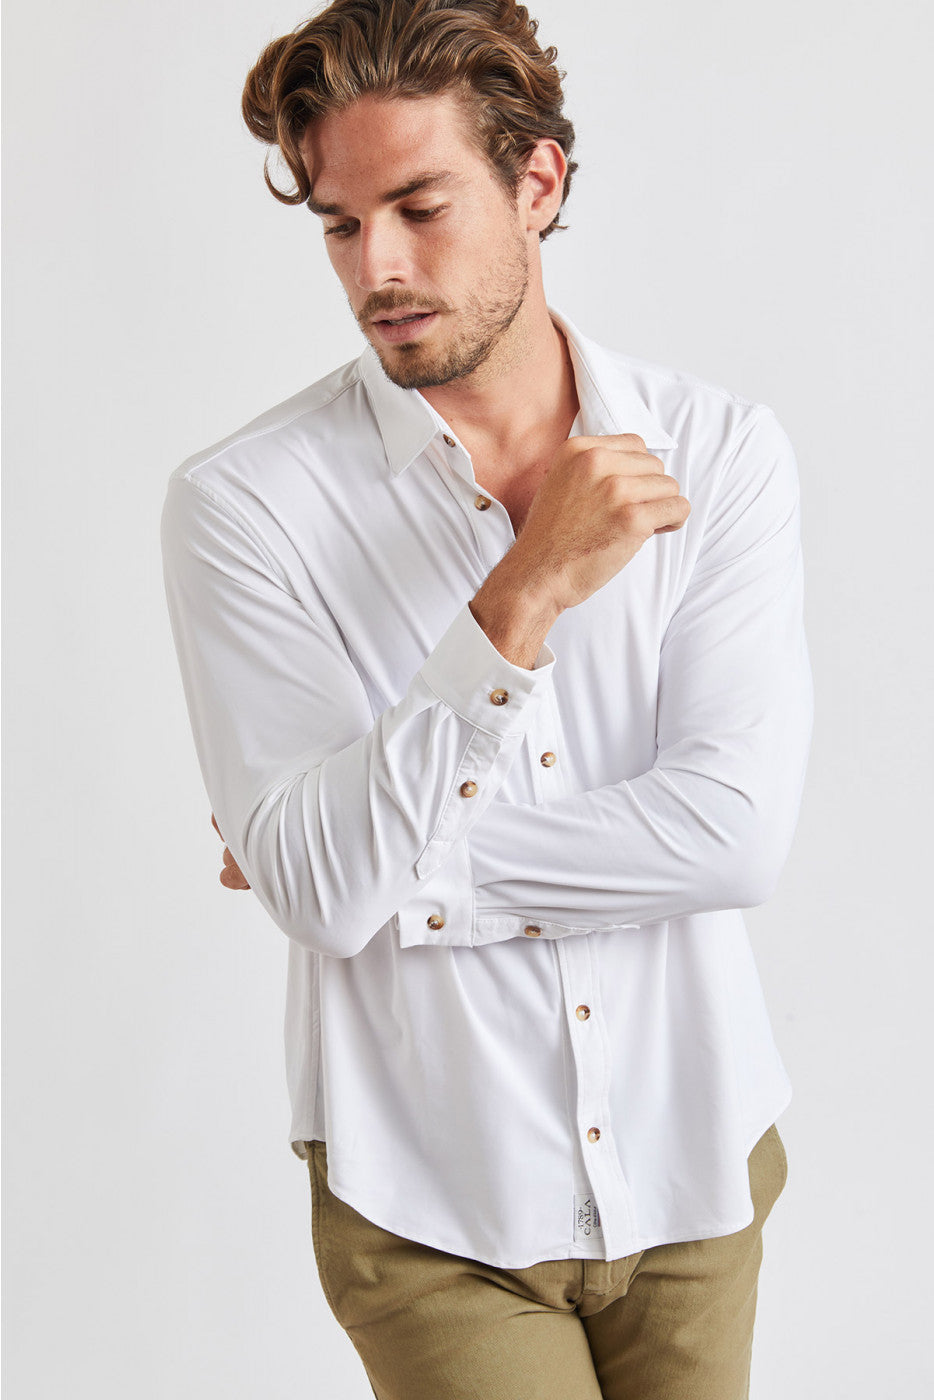 Alain Baiablue Shirt White